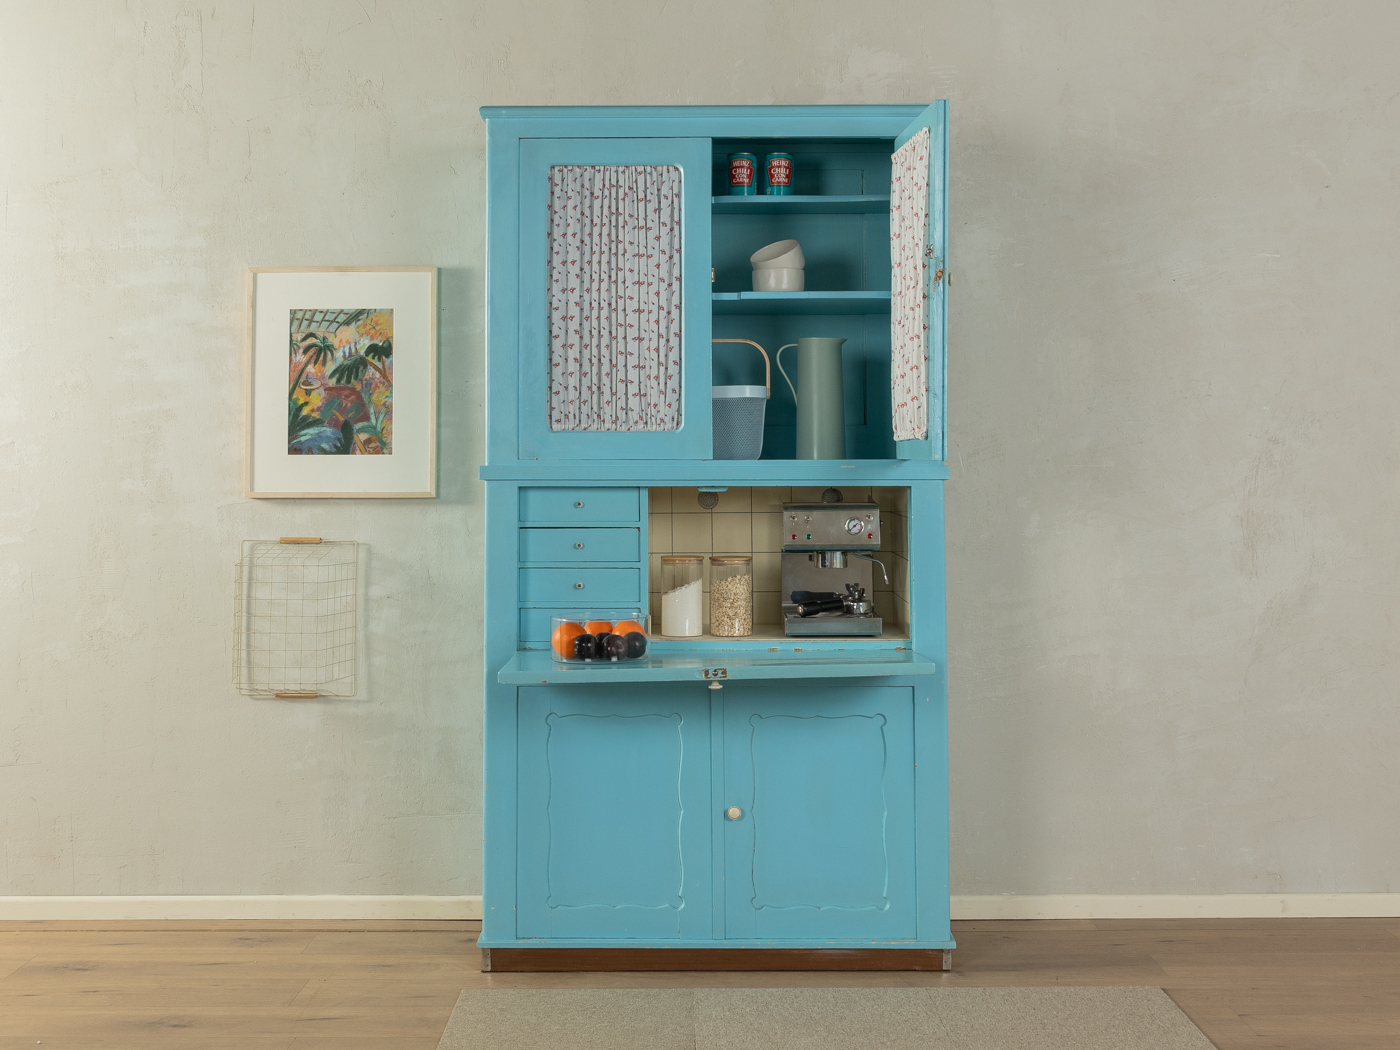 1950s kitchen cabinet